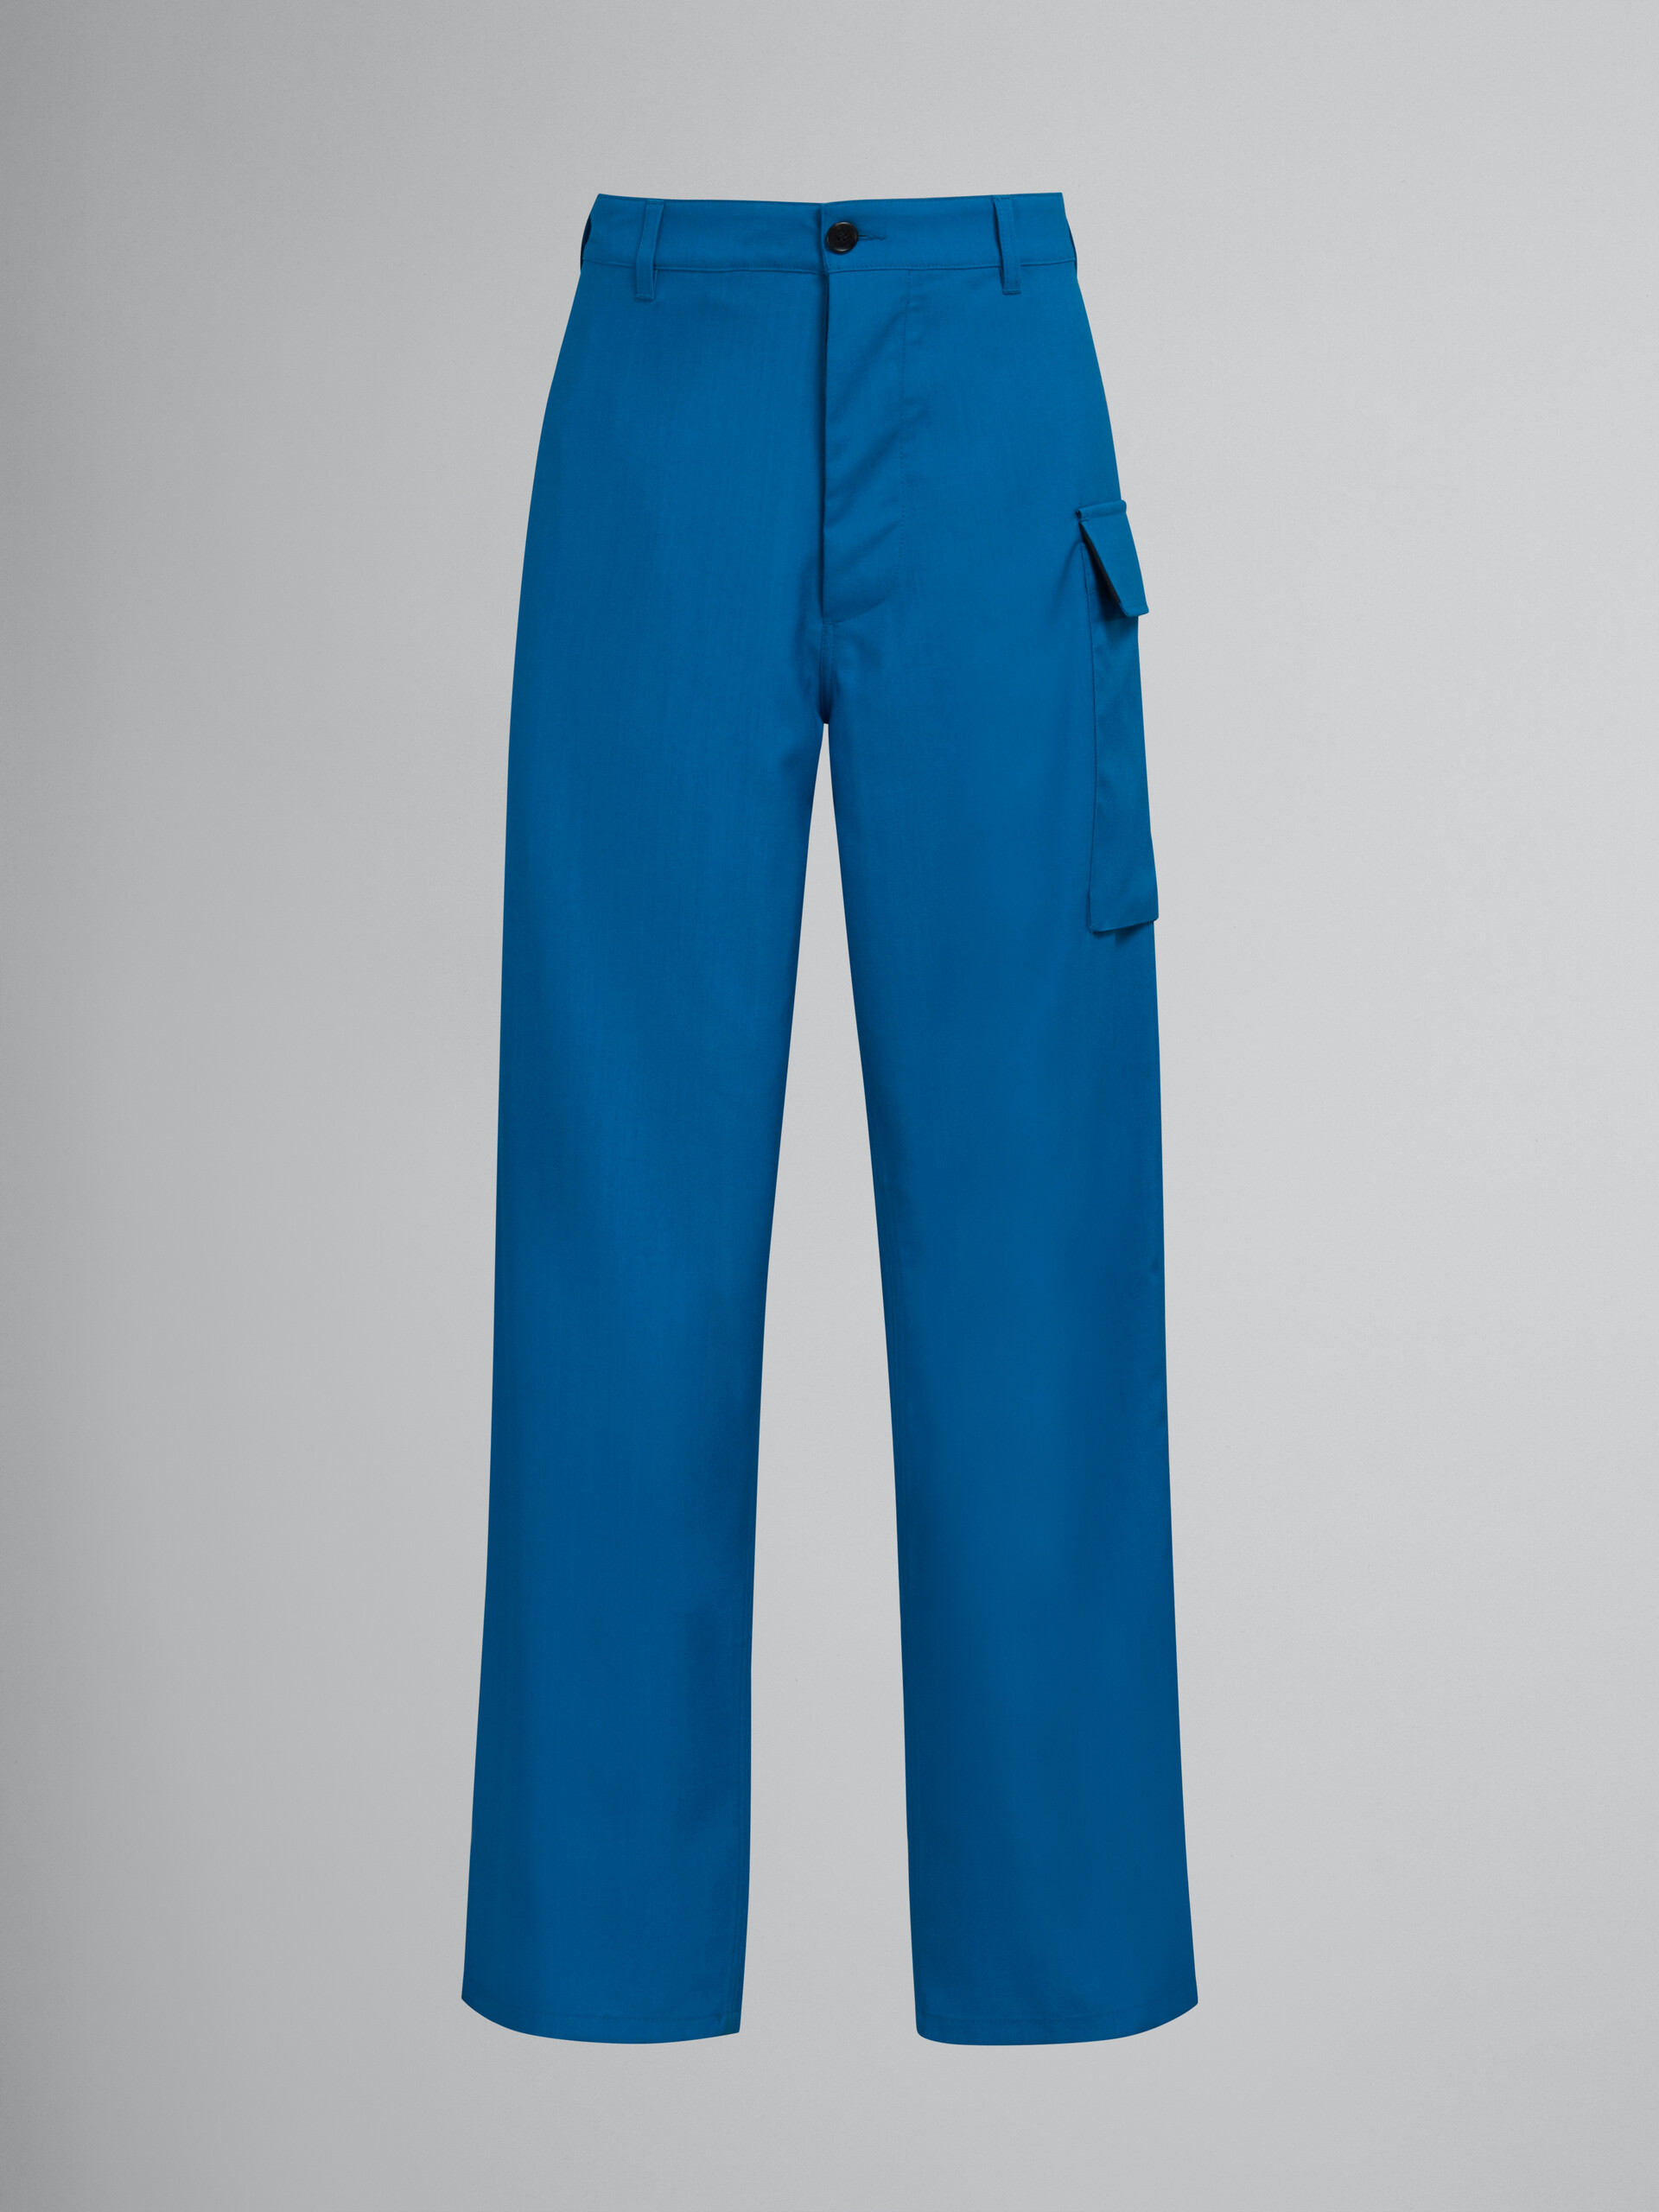 Blaugrüne Hose aus Tropenwolle mit Utility-Tasche - Hosen - Image 1